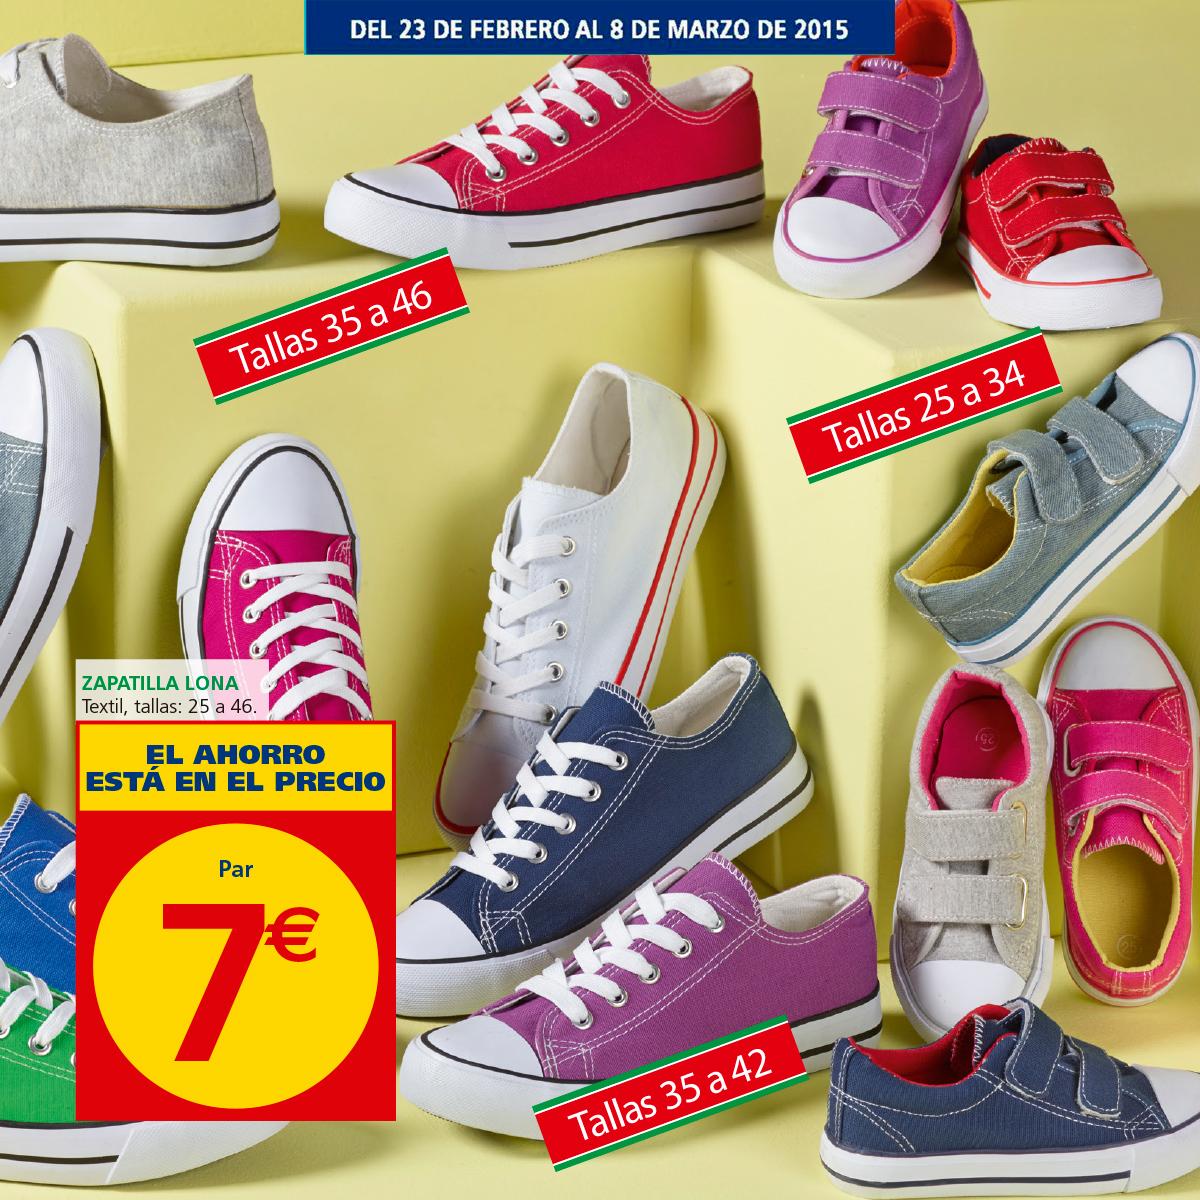 on Twitter: "Para gustos los colores... ¡Zapatillas molonas para todos! Descubre nuestra oferta, ¡sólo el 8 de marzo! ;) http://t.co/Ez0FTNmbc0" / Twitter